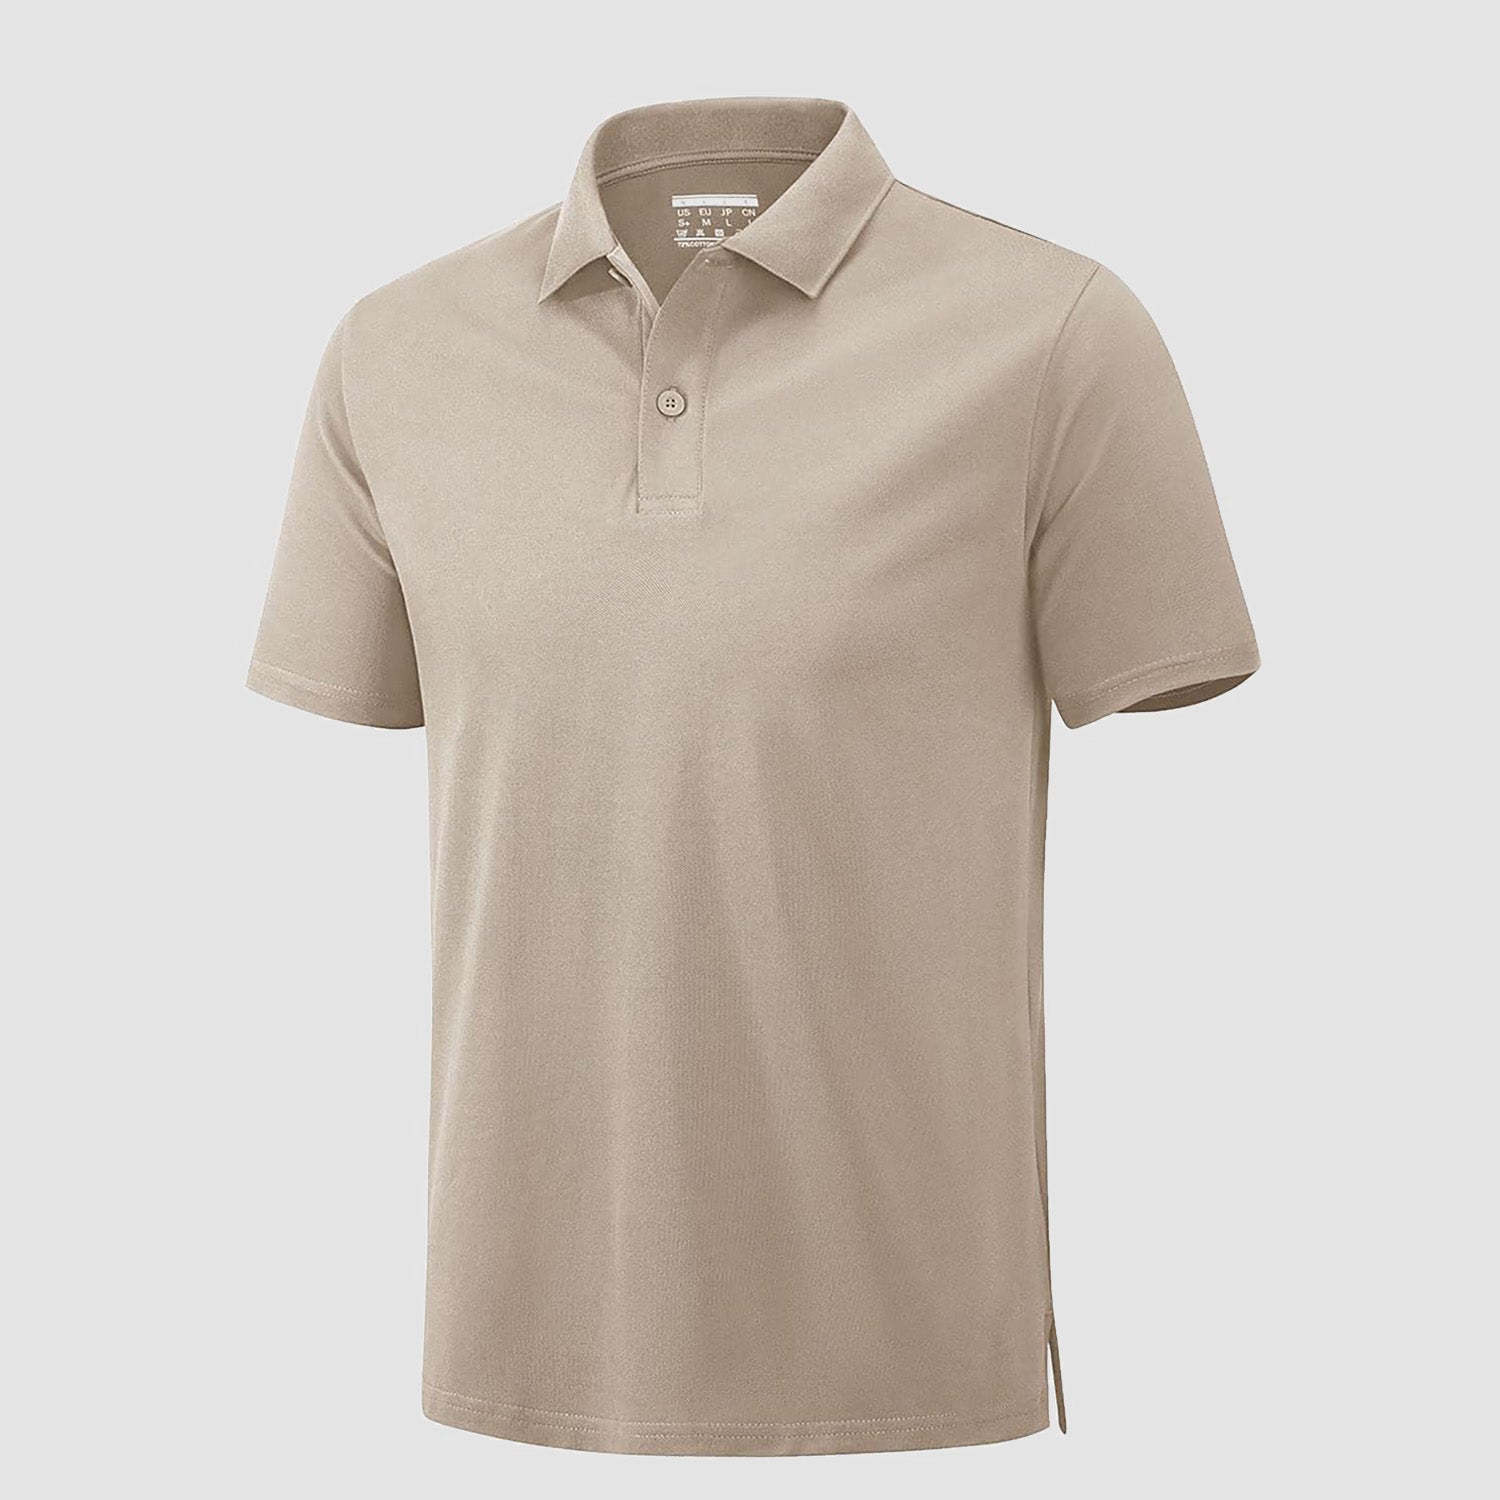 Mens Polo Shirt Golf Shirt Cotton Short Sleeve Casual T-Shirt Lightweight Summer Tennis Polo